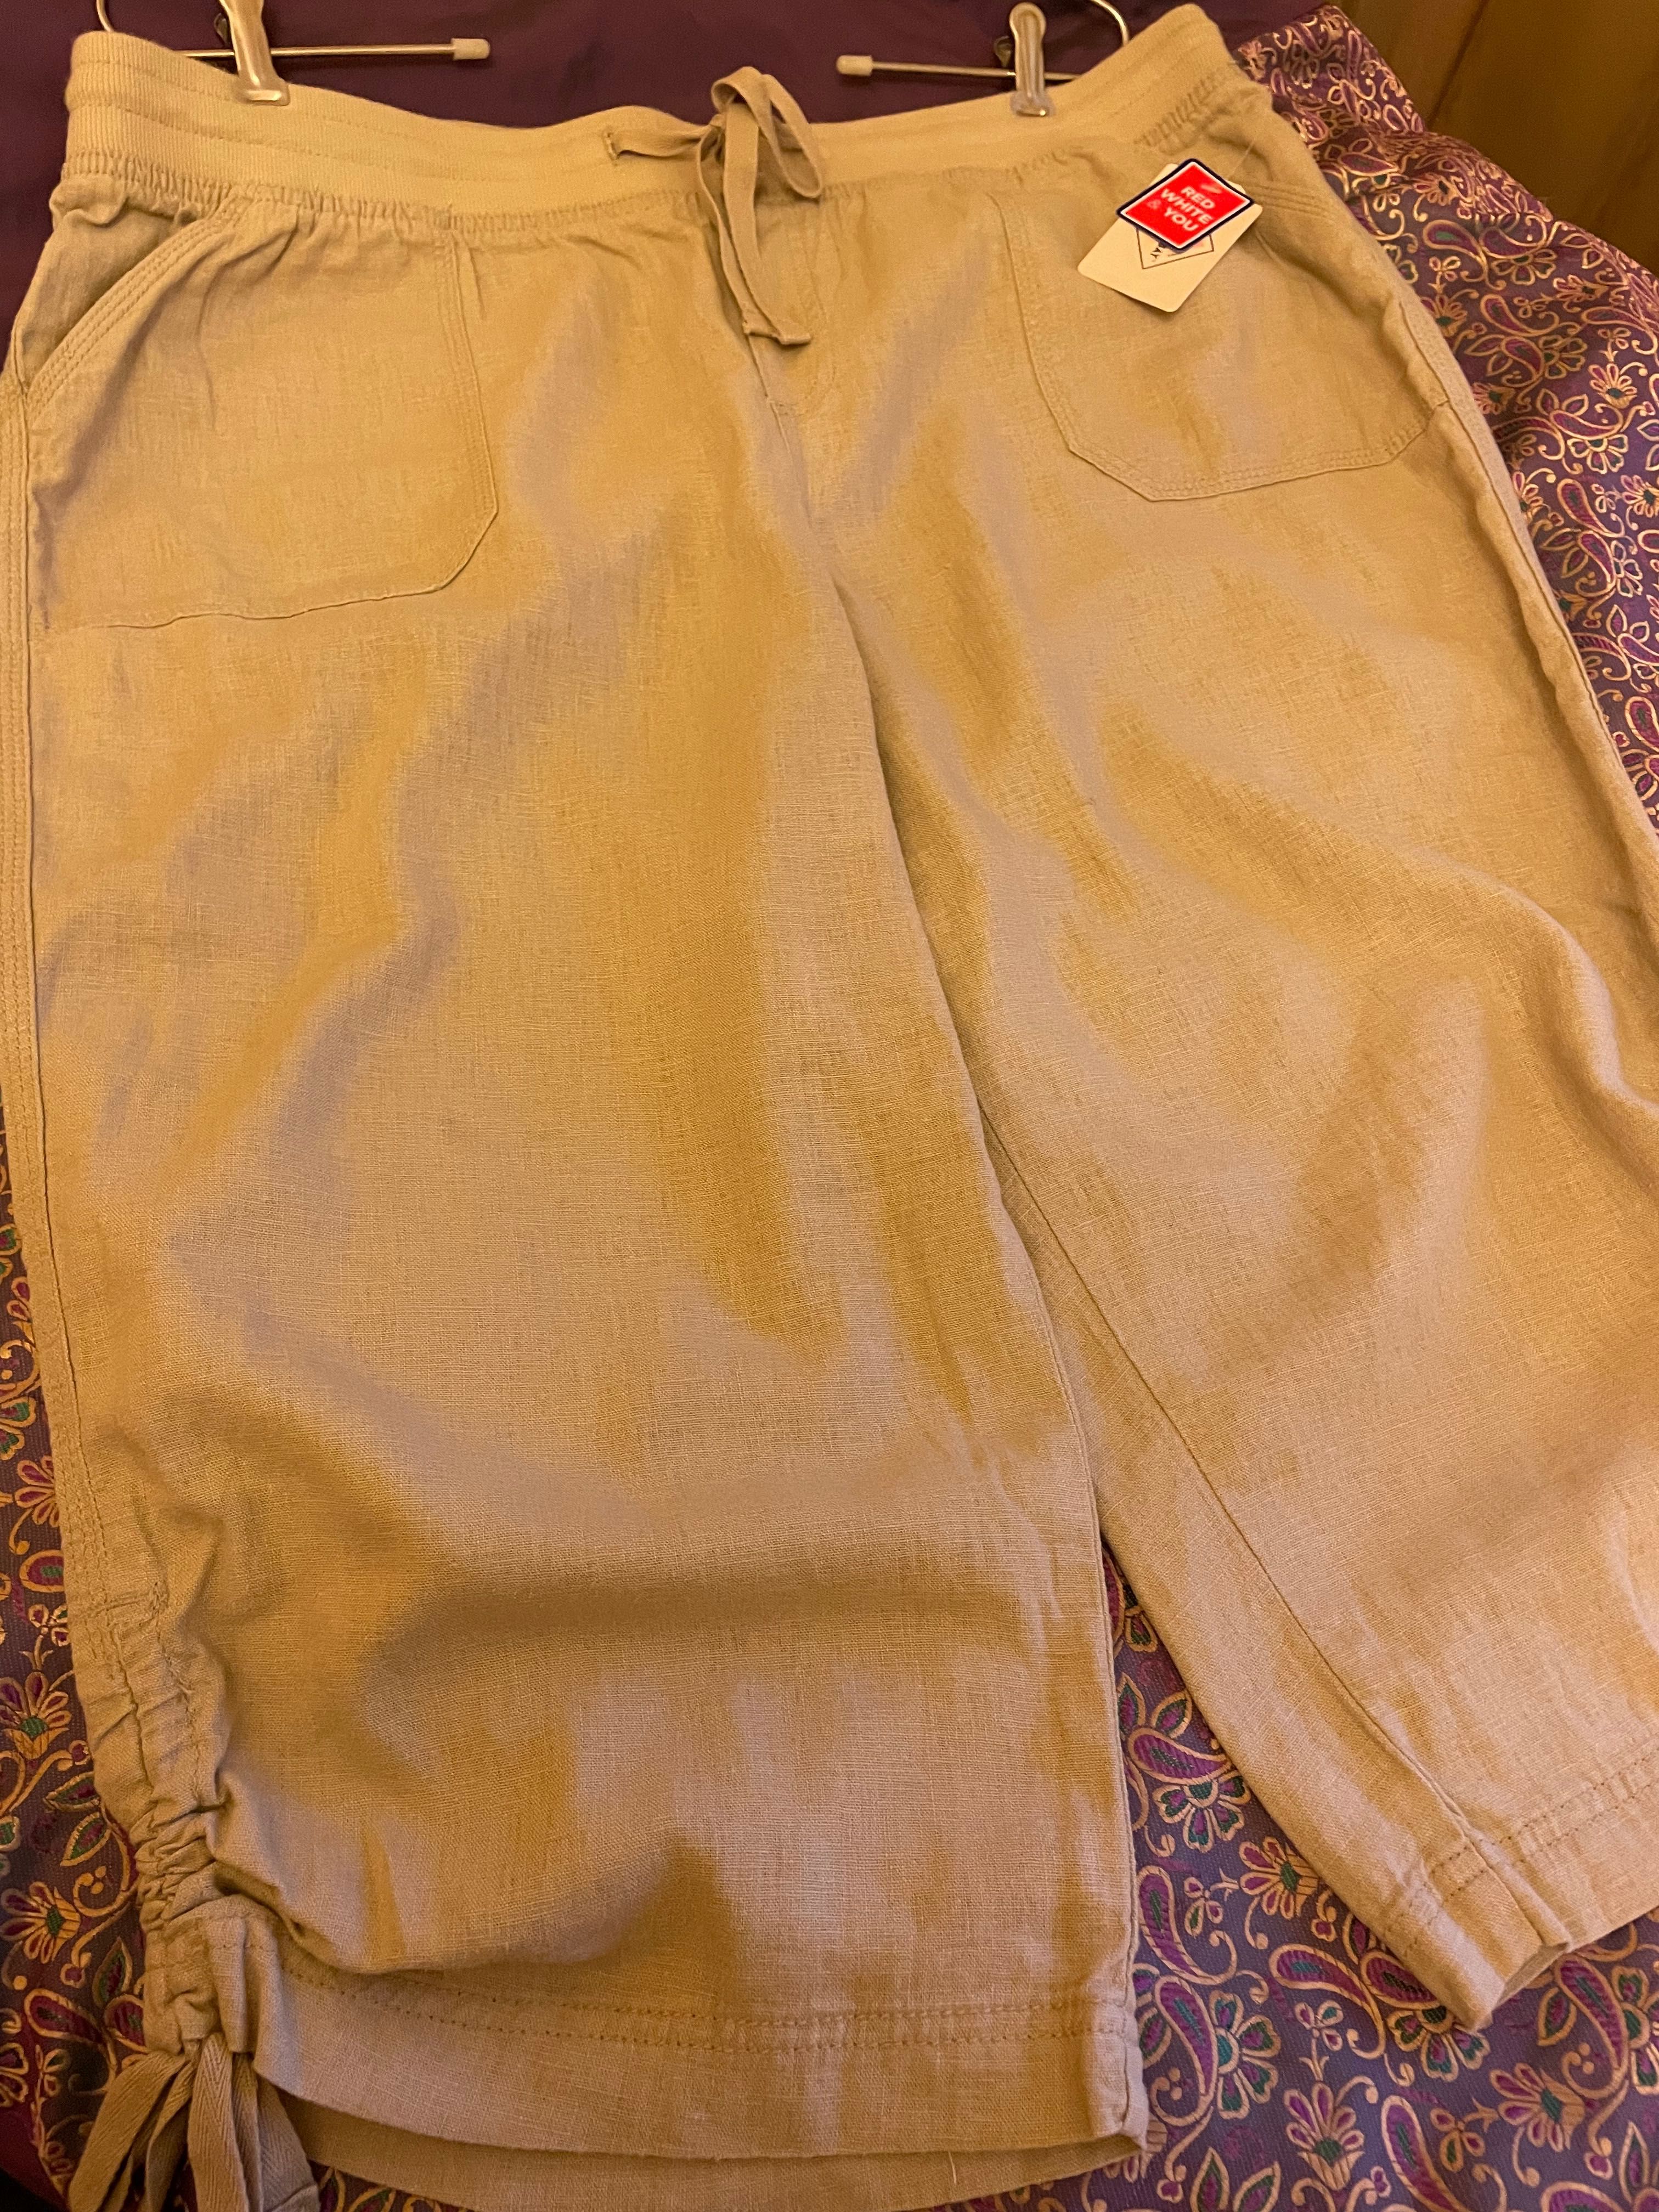 Женские брюки-бермуды ST JOHN'S BAY (USA), лен.